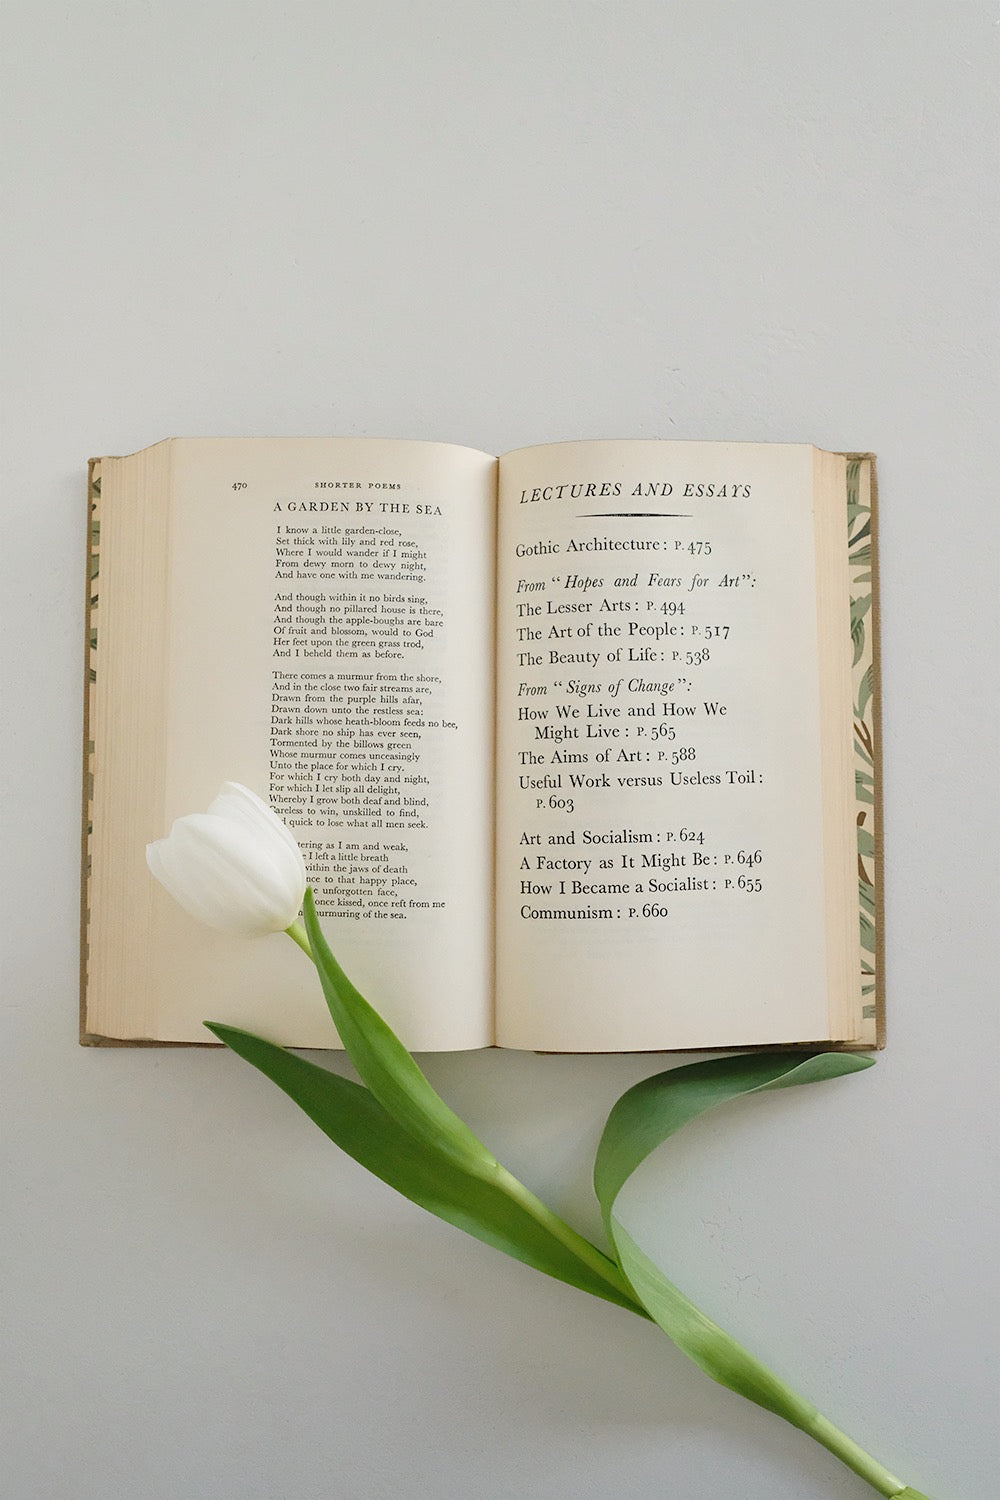 “William Morris” (1st edition)